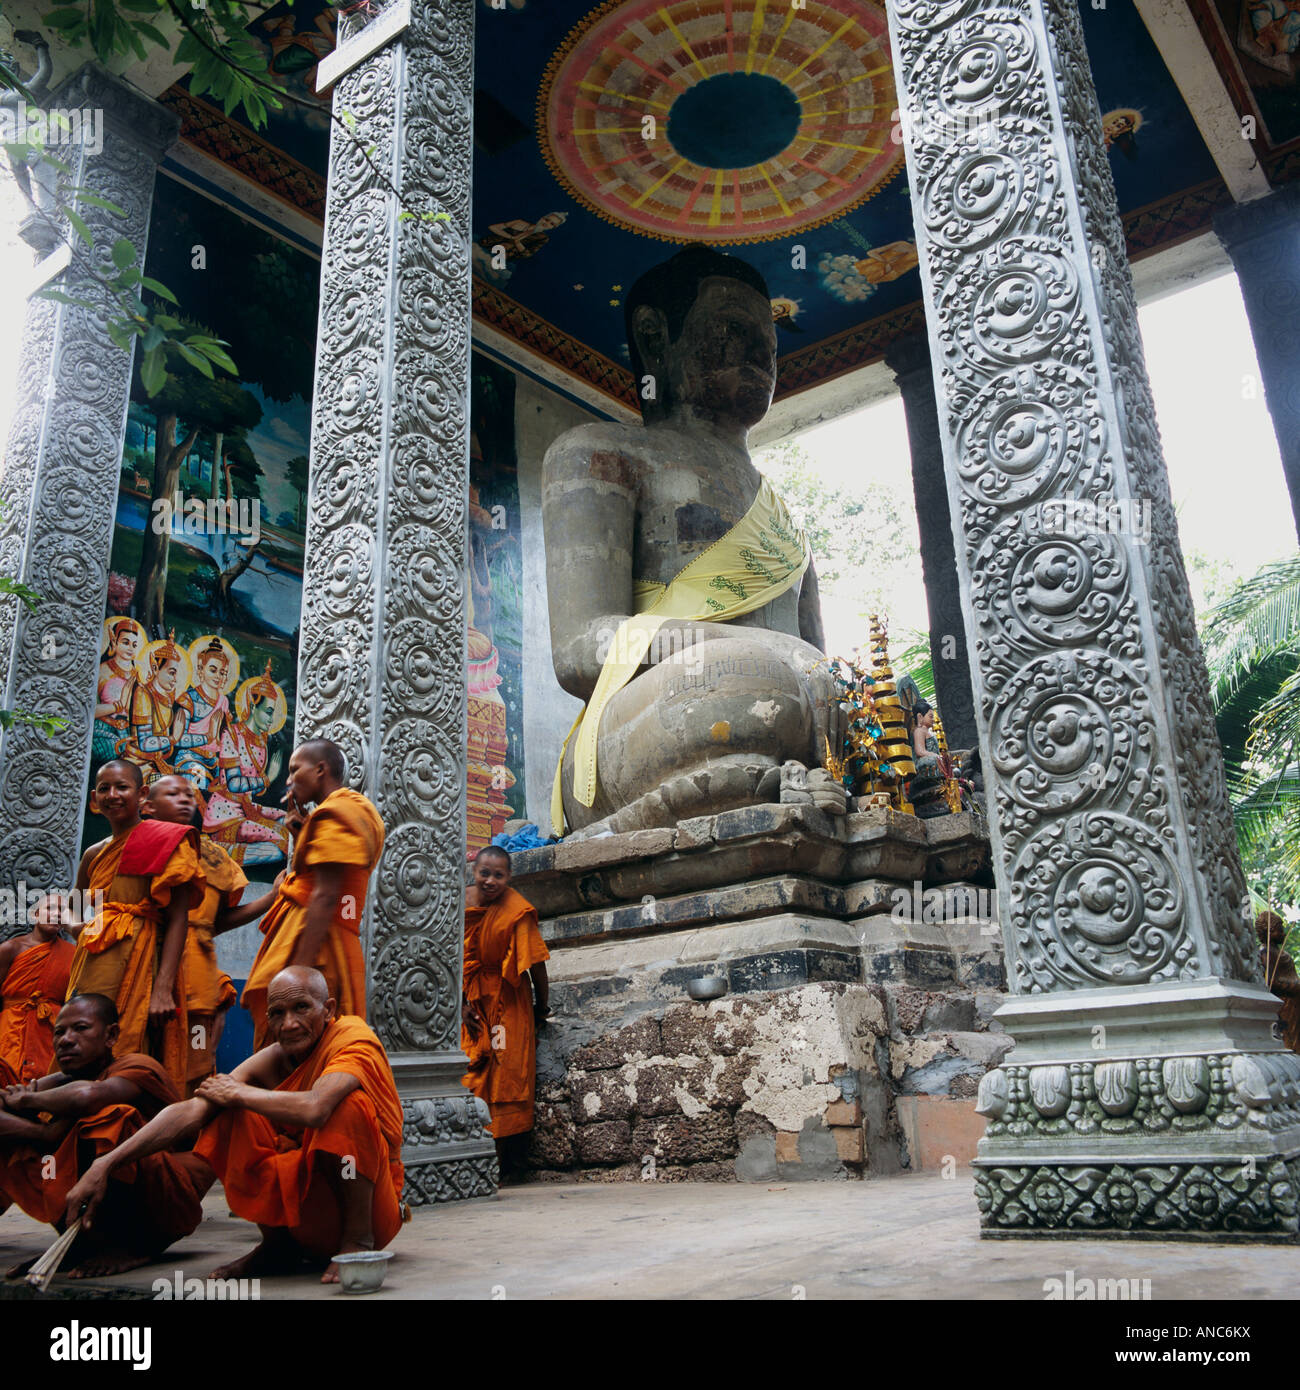 Statue de Bouddha avec les moines Angkor Wat Cambodge Asie du sud-est Banque D'Images